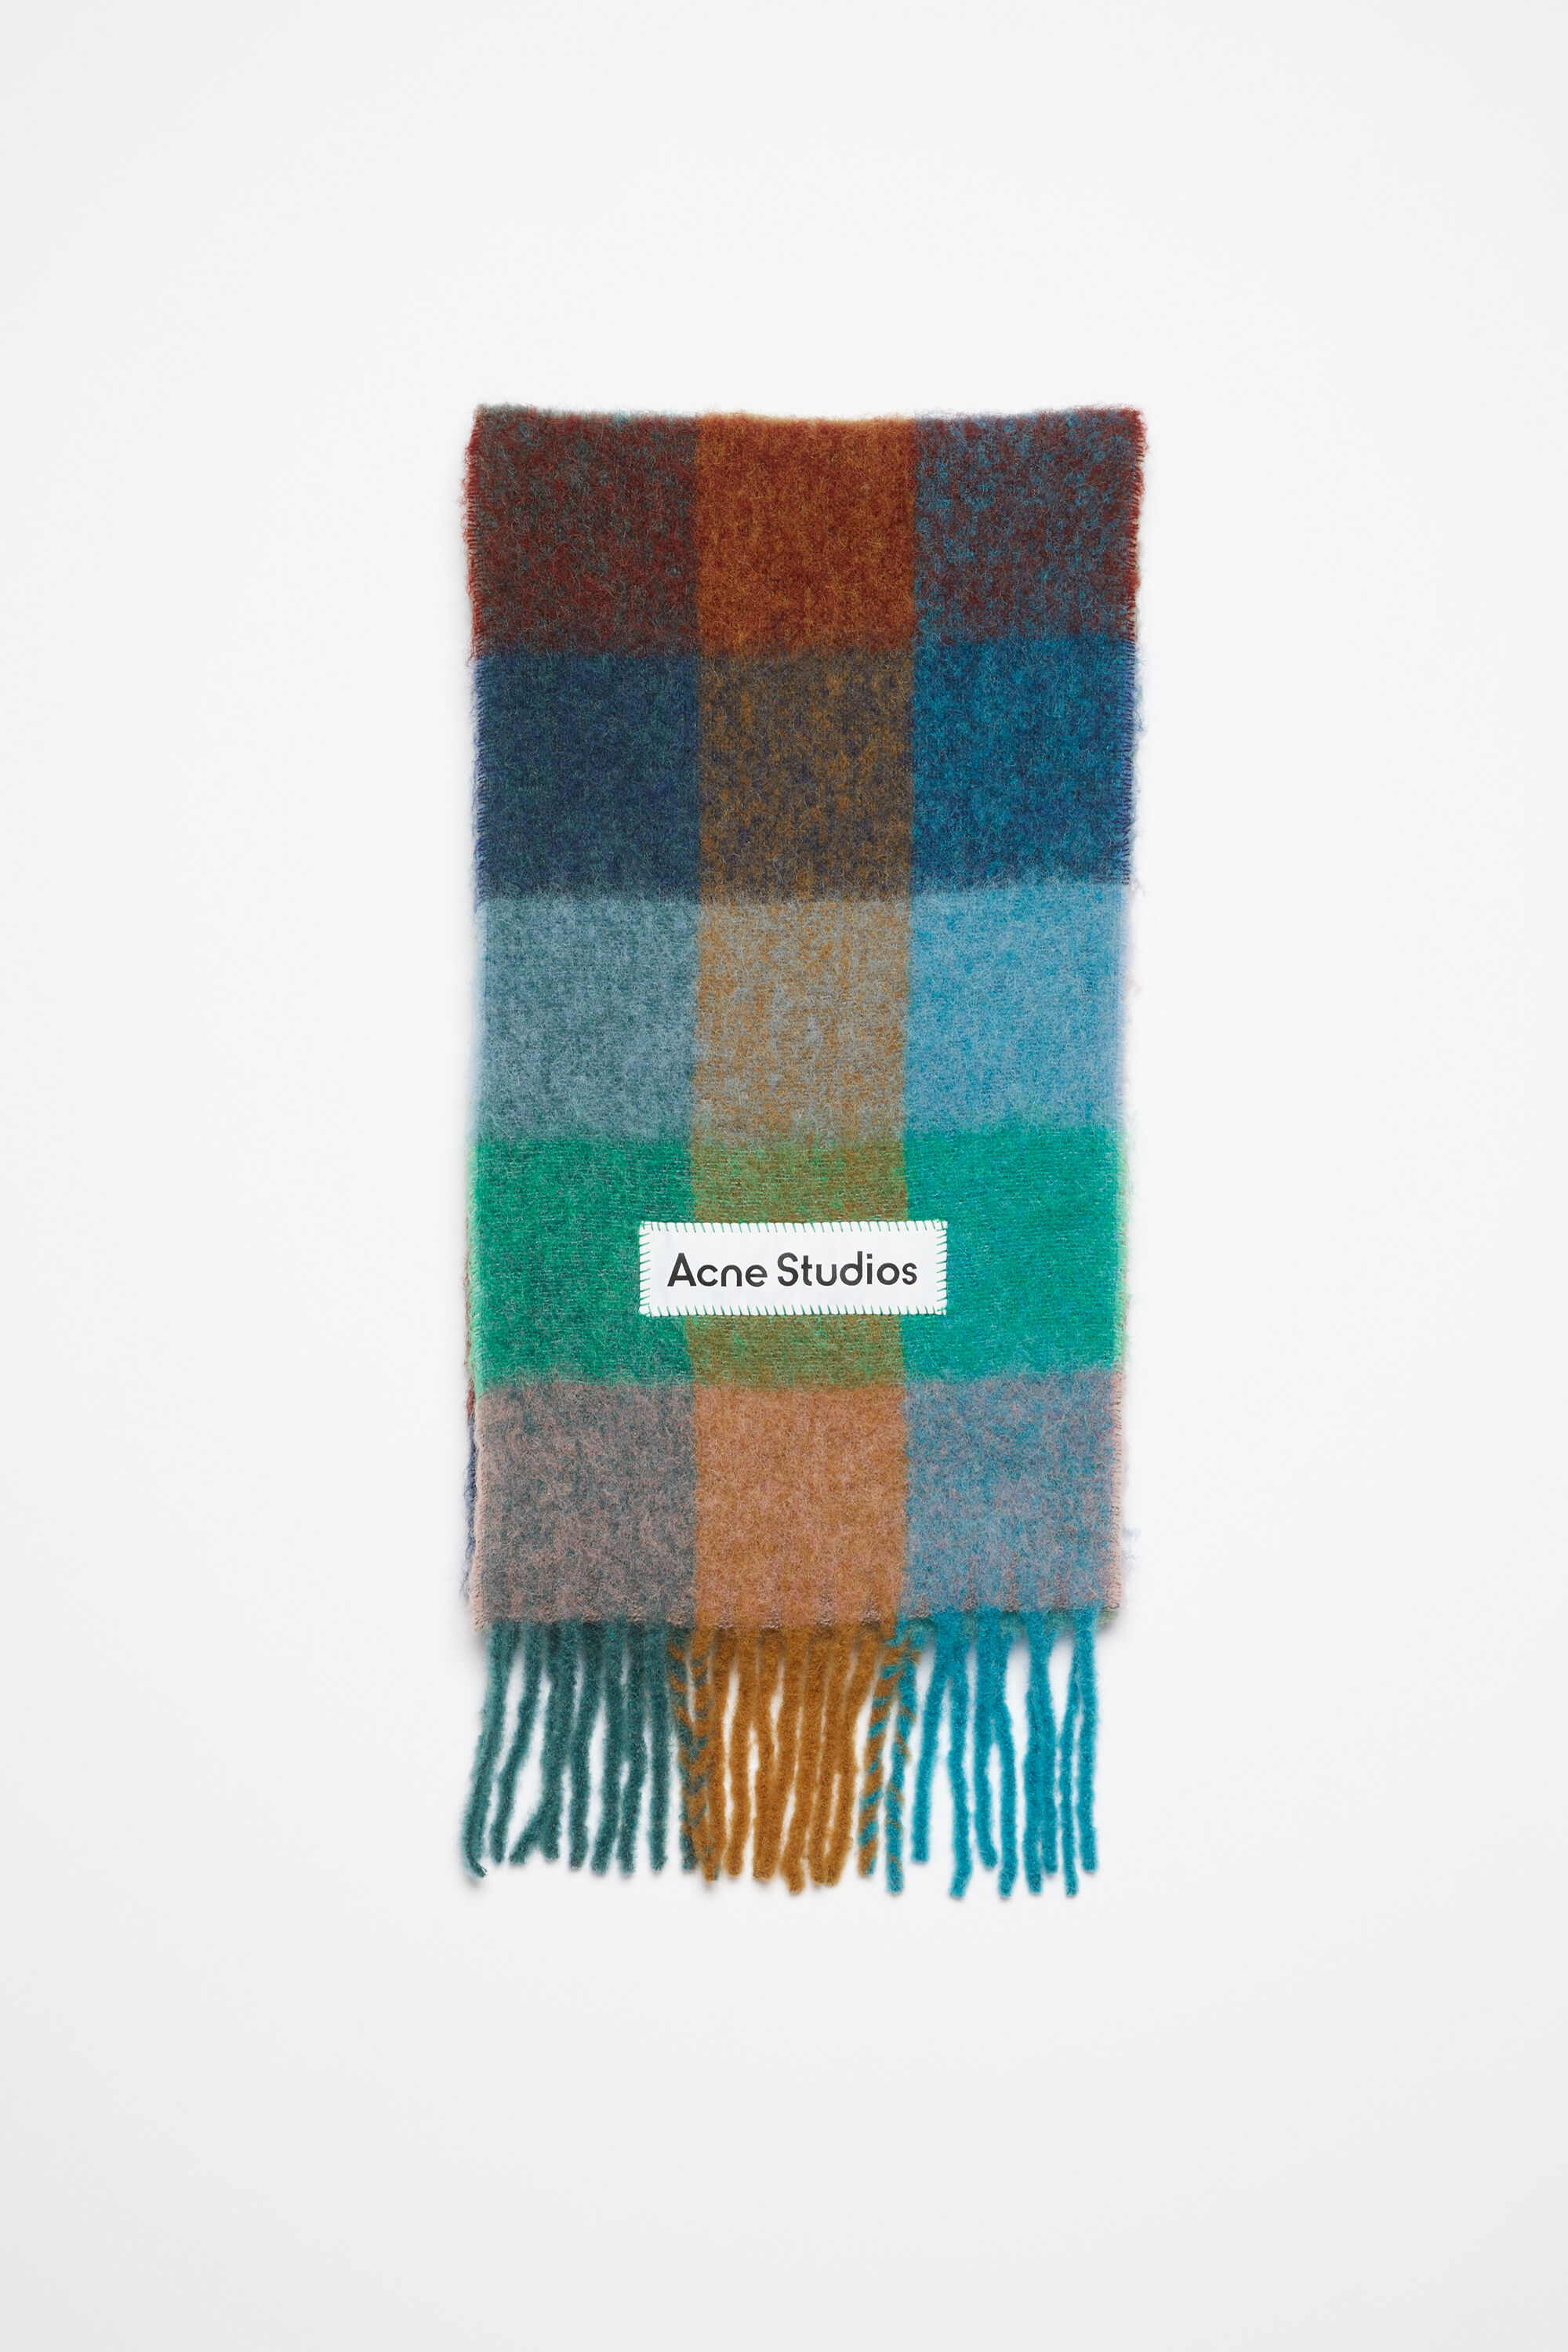 아크네 스튜디오 Acne Studios Mohair checked scarf - Turquoise/camel/blue